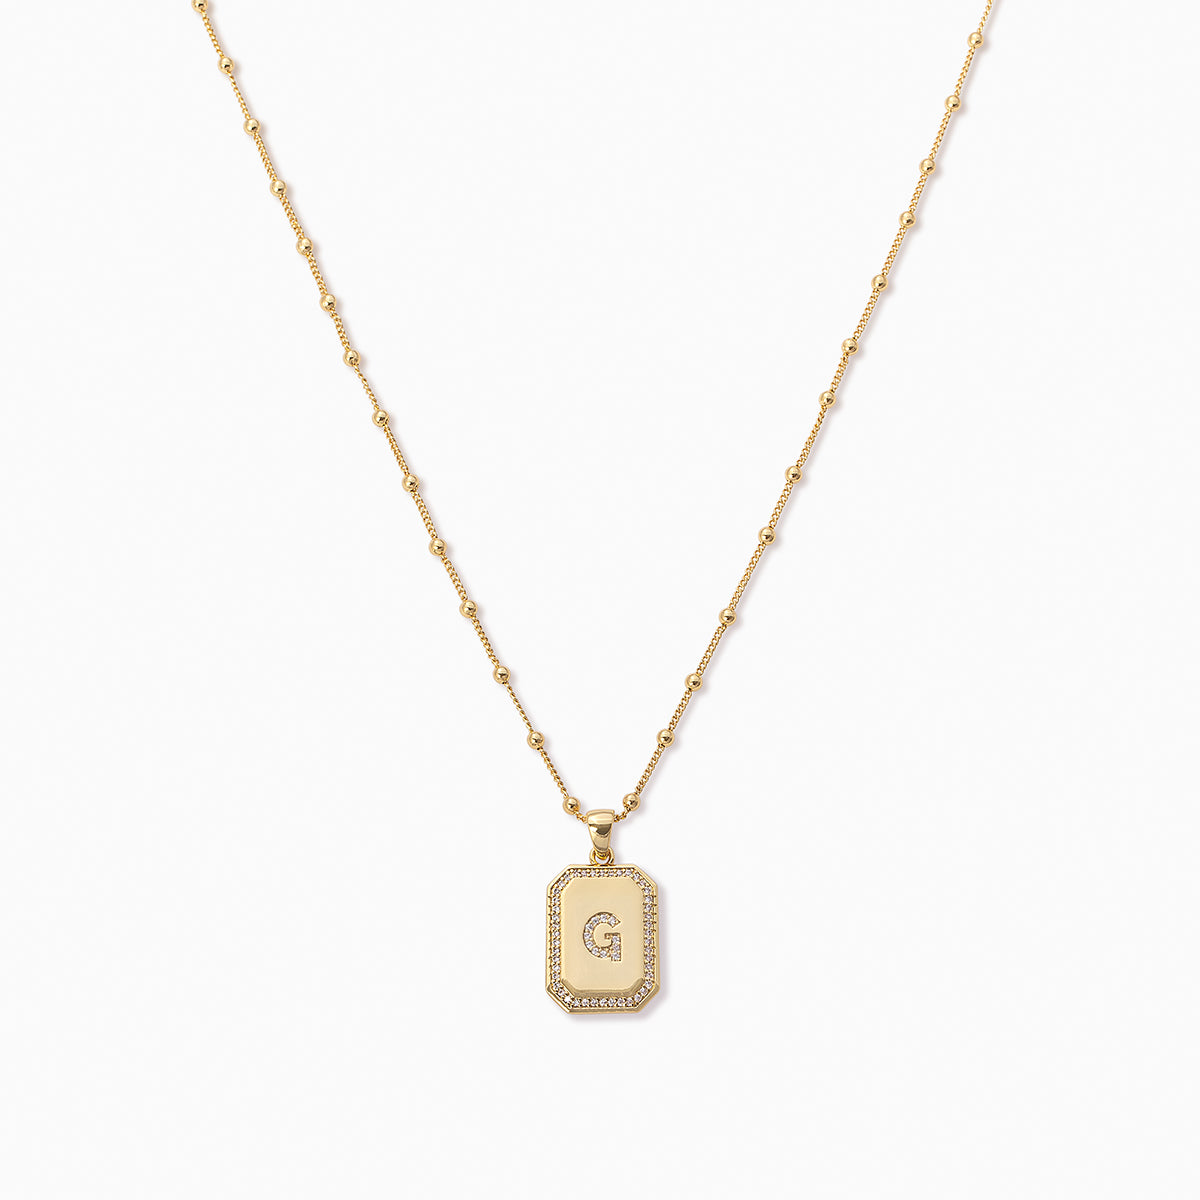 Sur 2.0 Necklace | Gold G | Product Image | Uncommon James